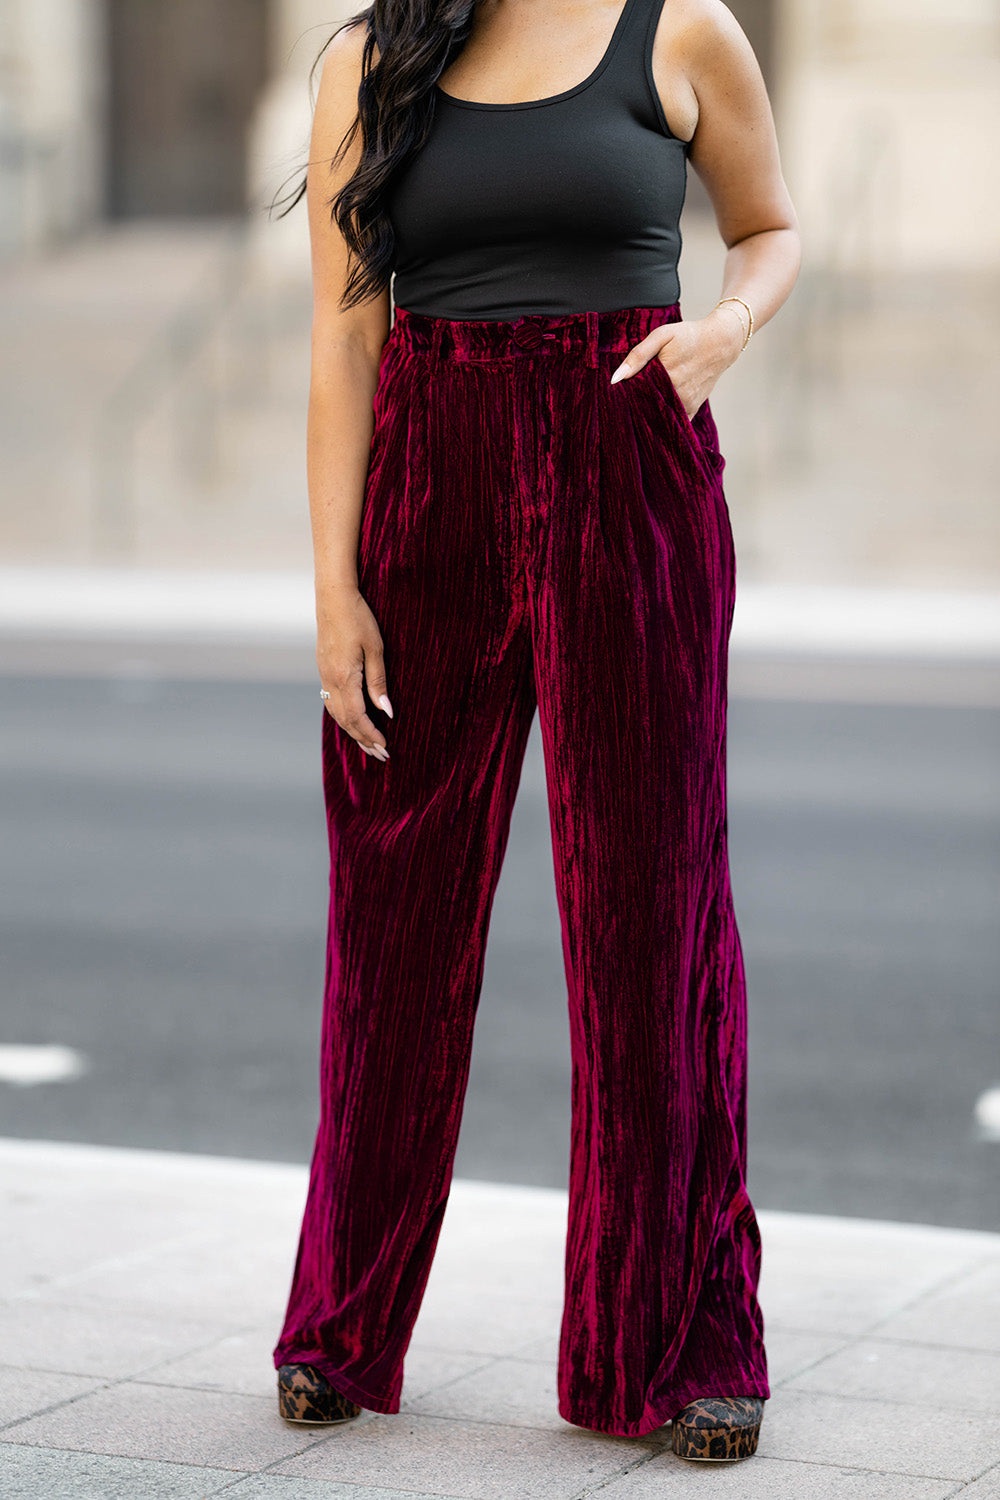 Jules & Leopold Womens Burgundy Maroon Velvet Straight Leg Pull On Pants  Size XS | eBay